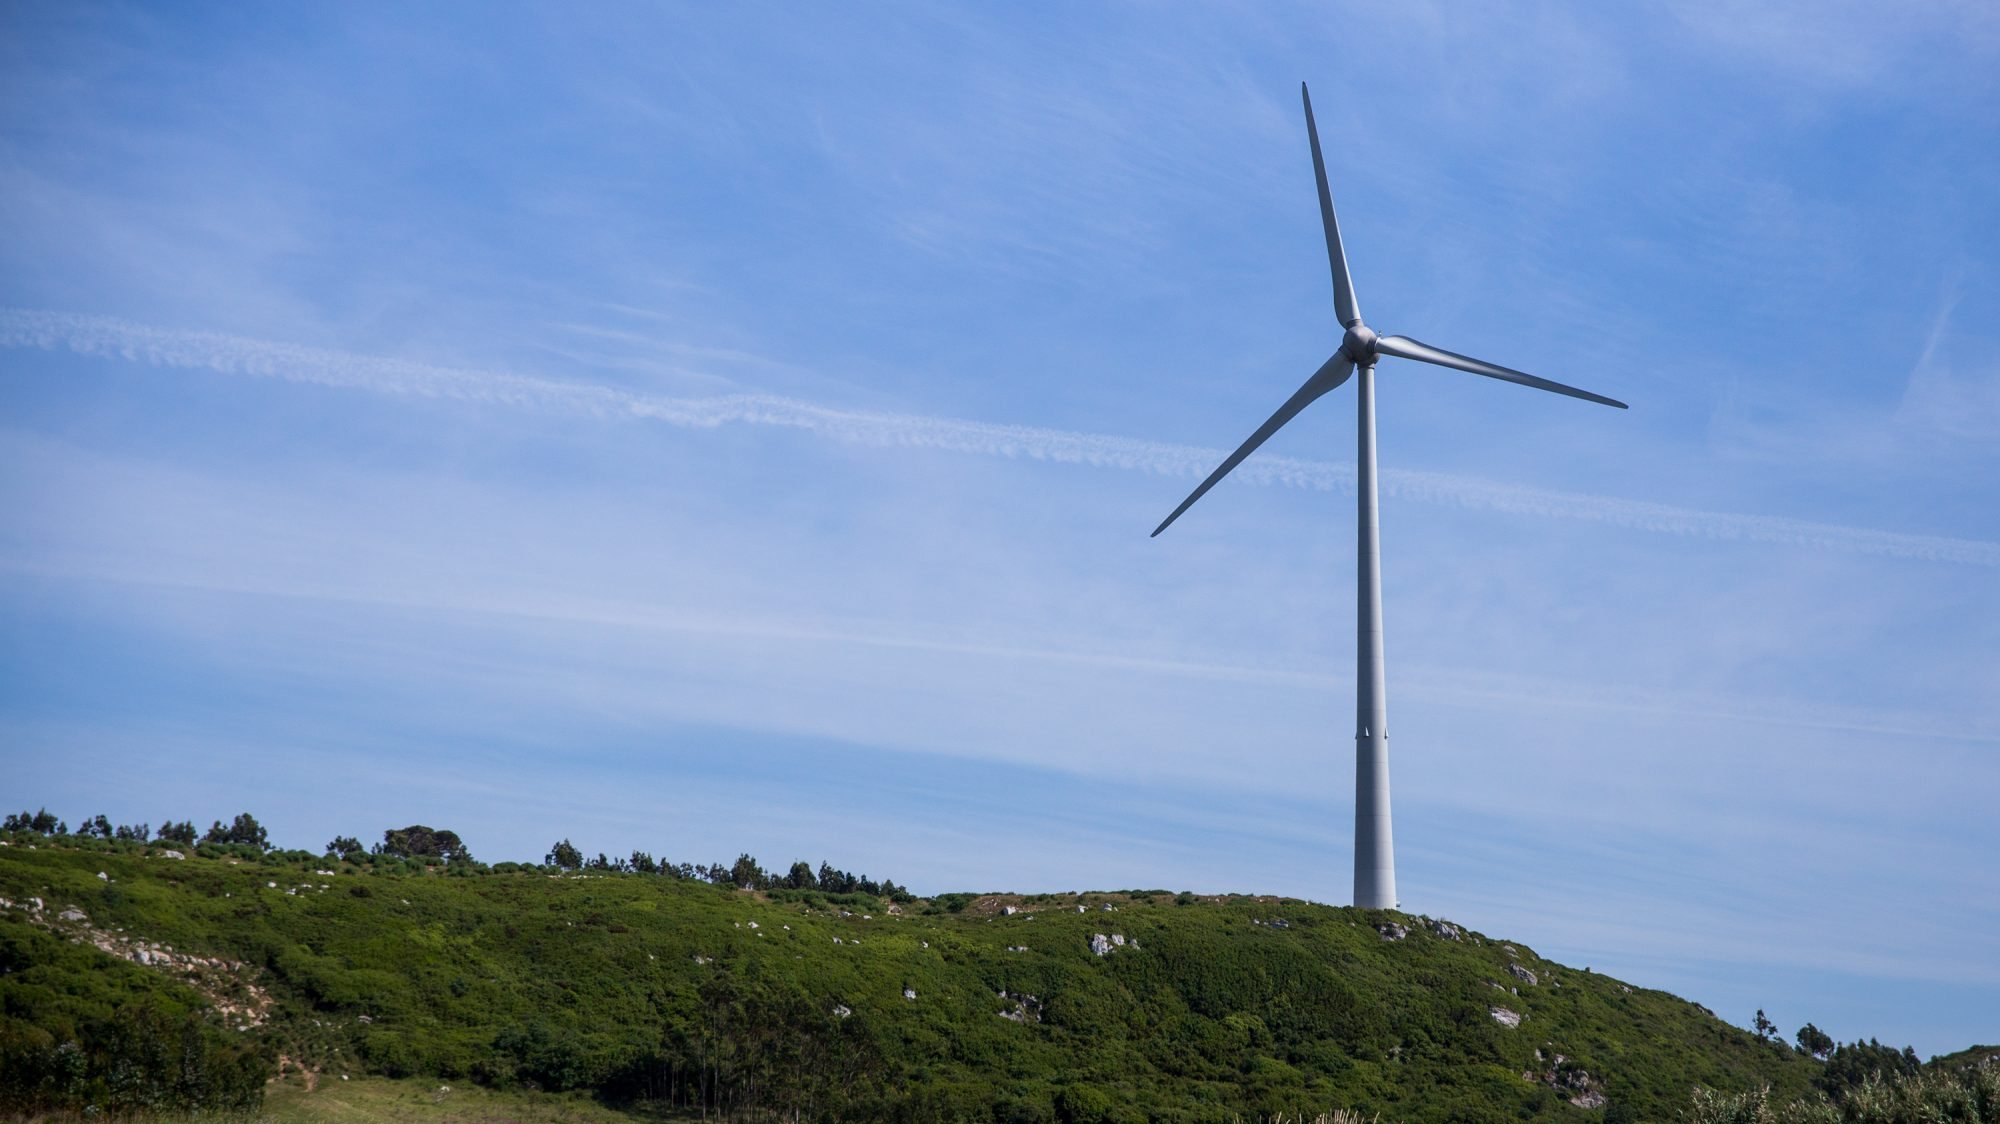 Energia eólica, que utiliza o vento para a produção de energia, constituiu cerca de 25% do consumo de eletricidade em Portugal, em 2020